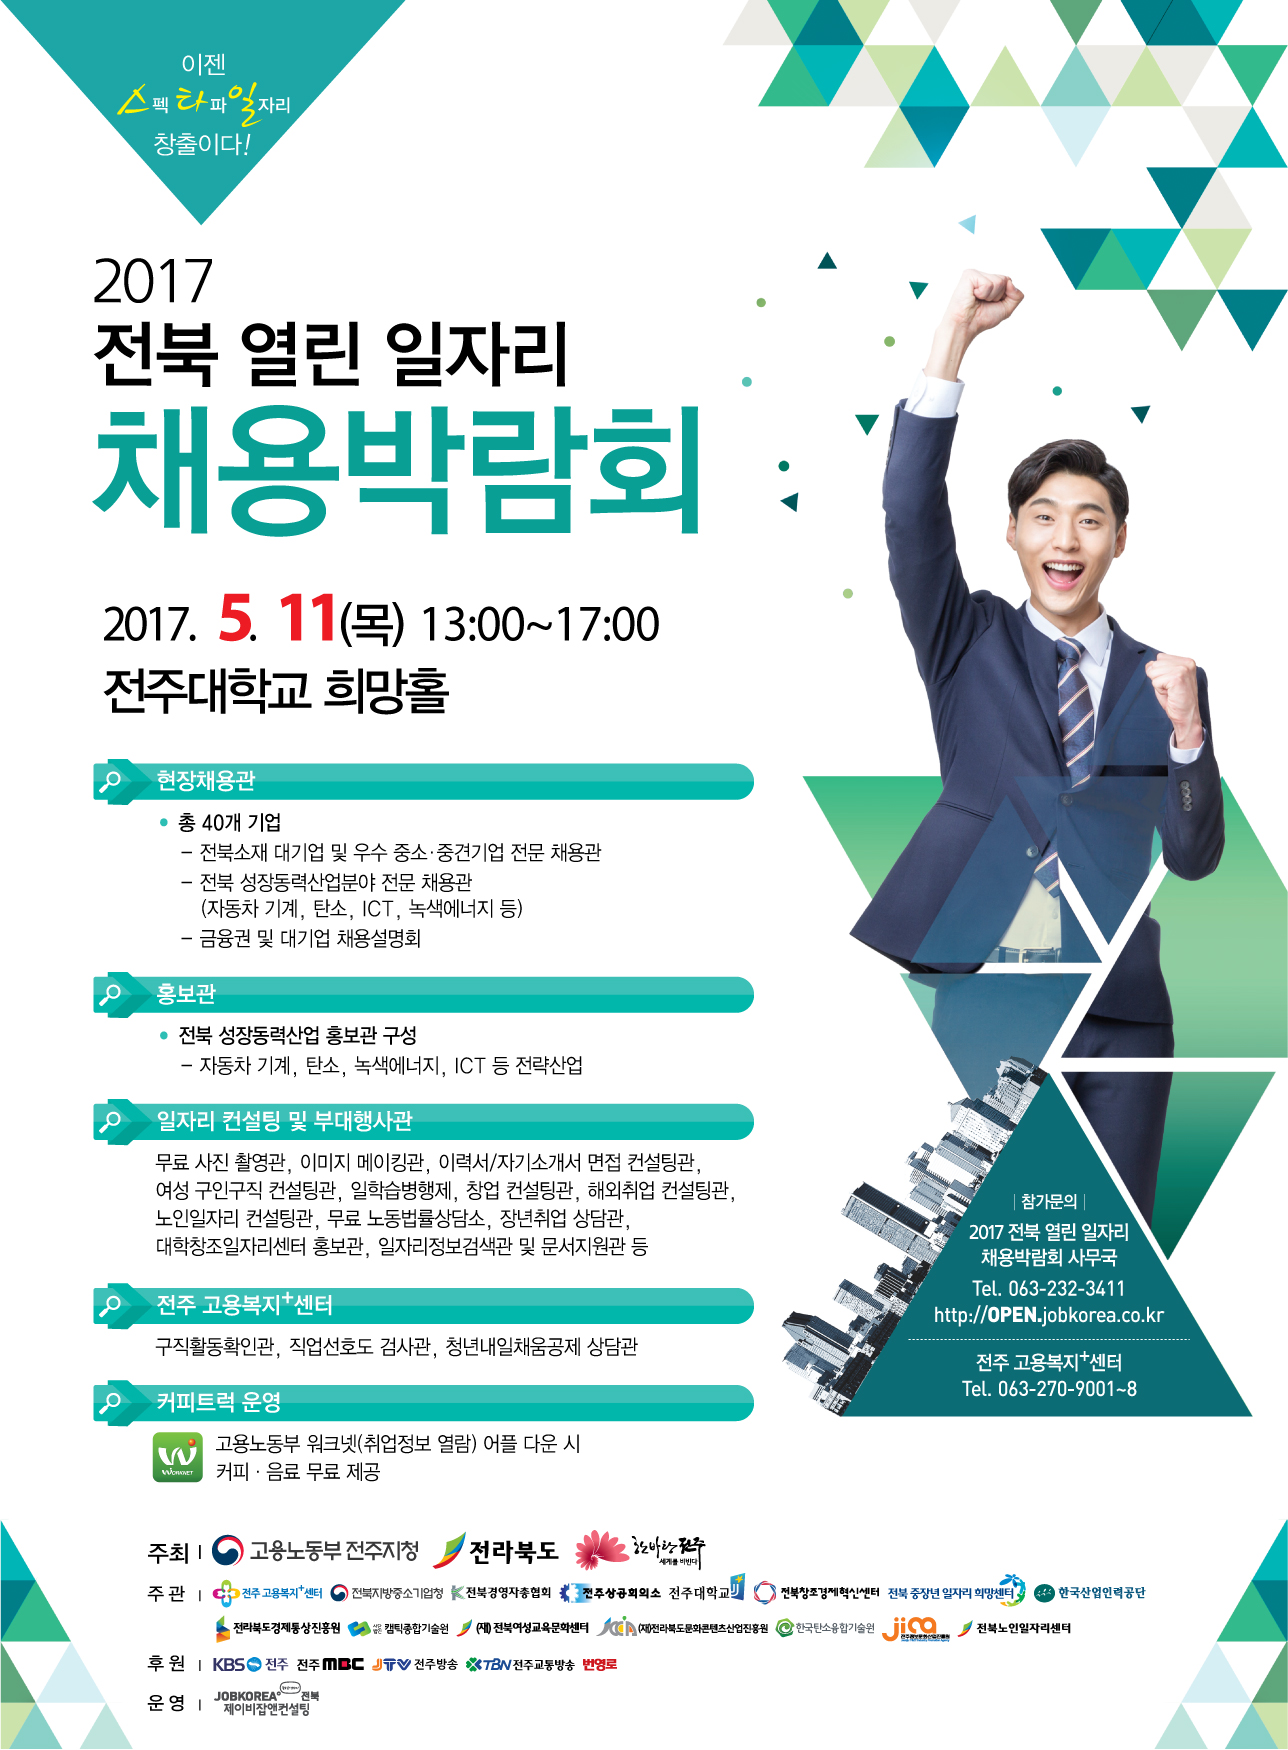  사본 -전북열린일자리채용박람회-포스터.jpg